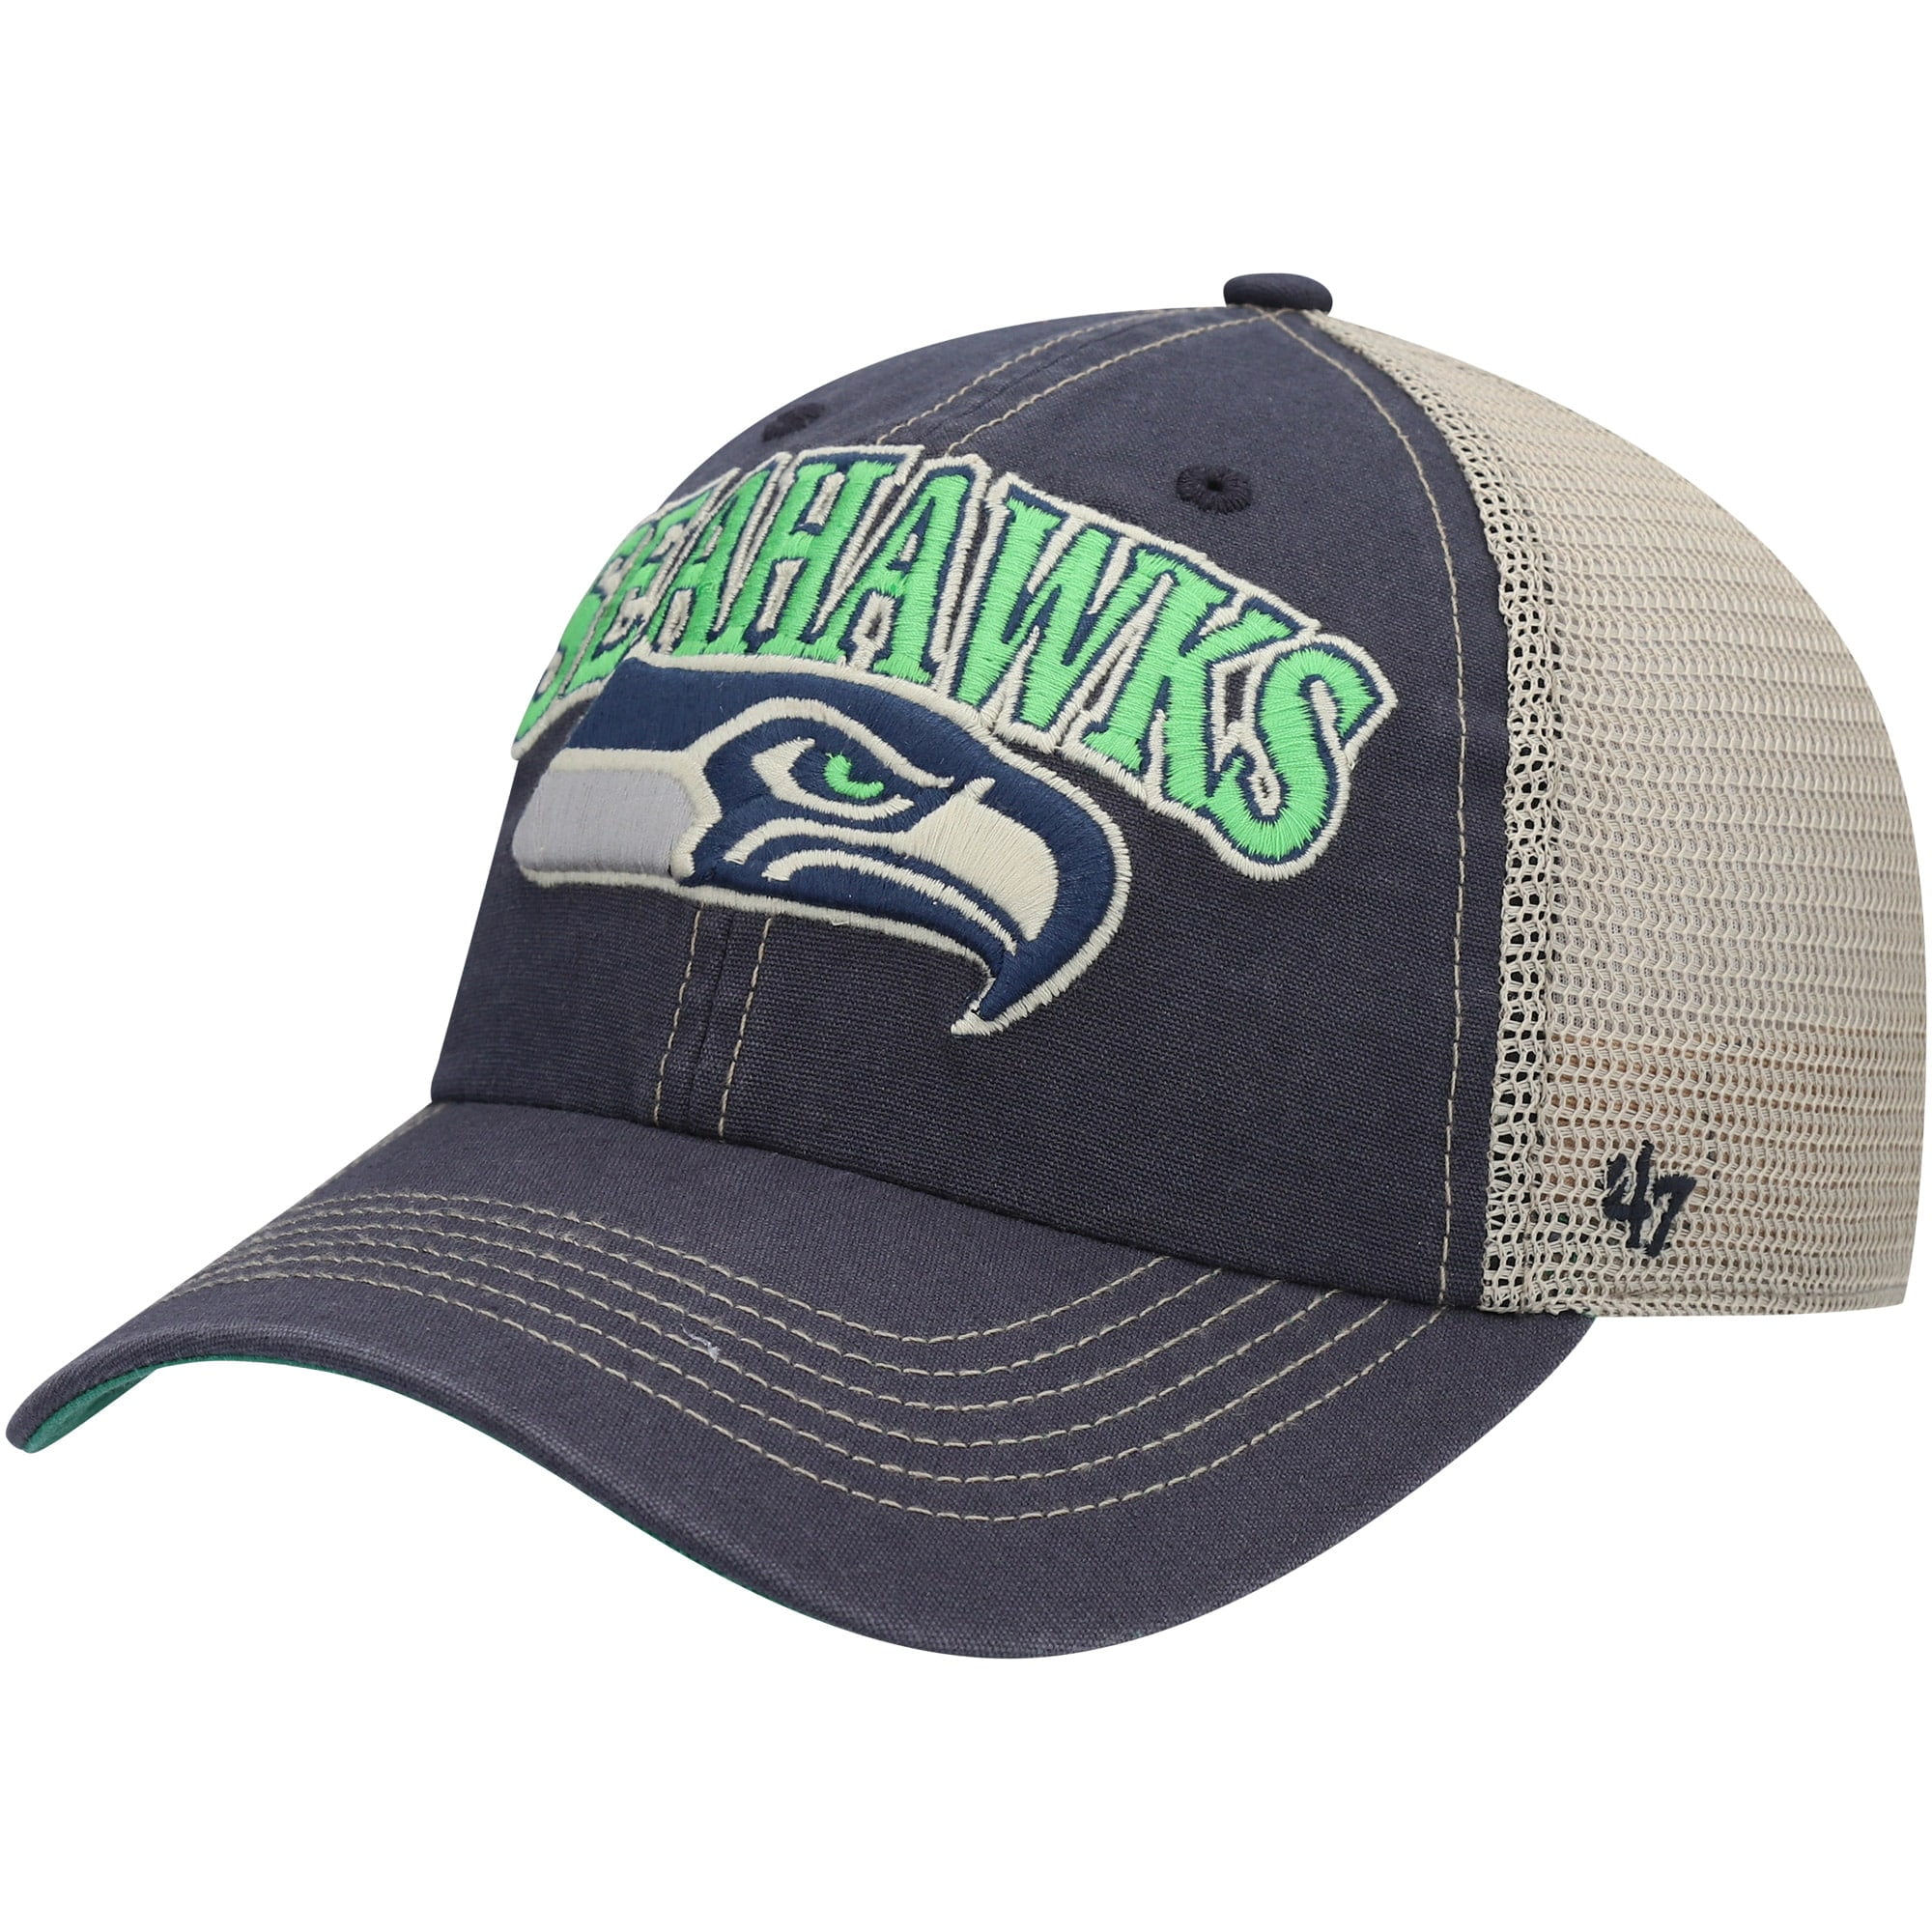 seattle seahawks cap